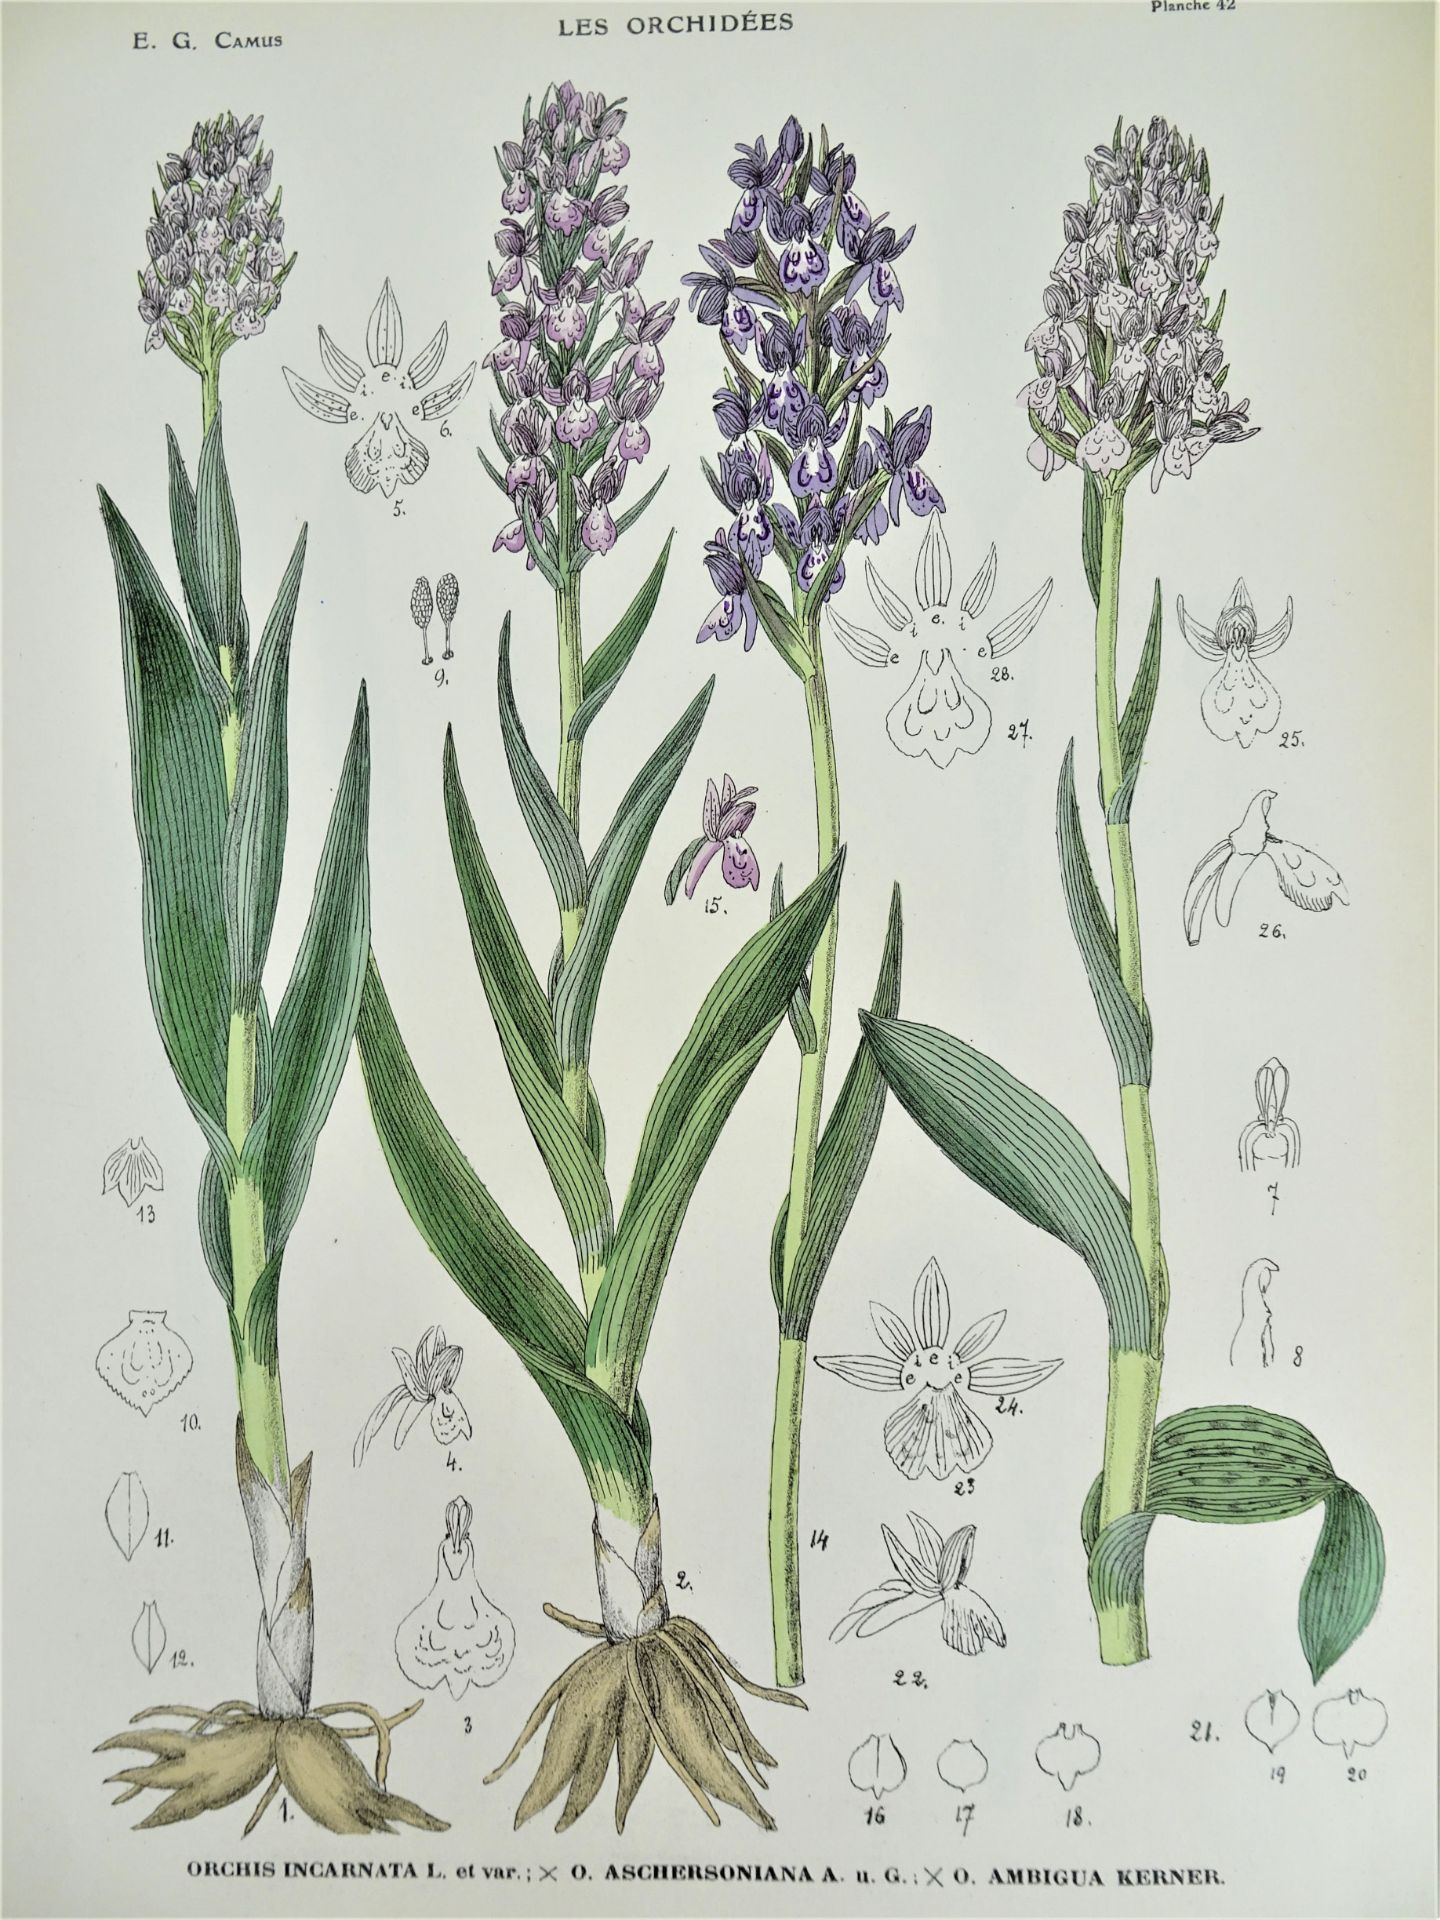 |Orchidaceae| E. G. Camus, "Iconographie des Orchidées d'Europe et du Bassin Méditerranéen", - Image 9 of 14